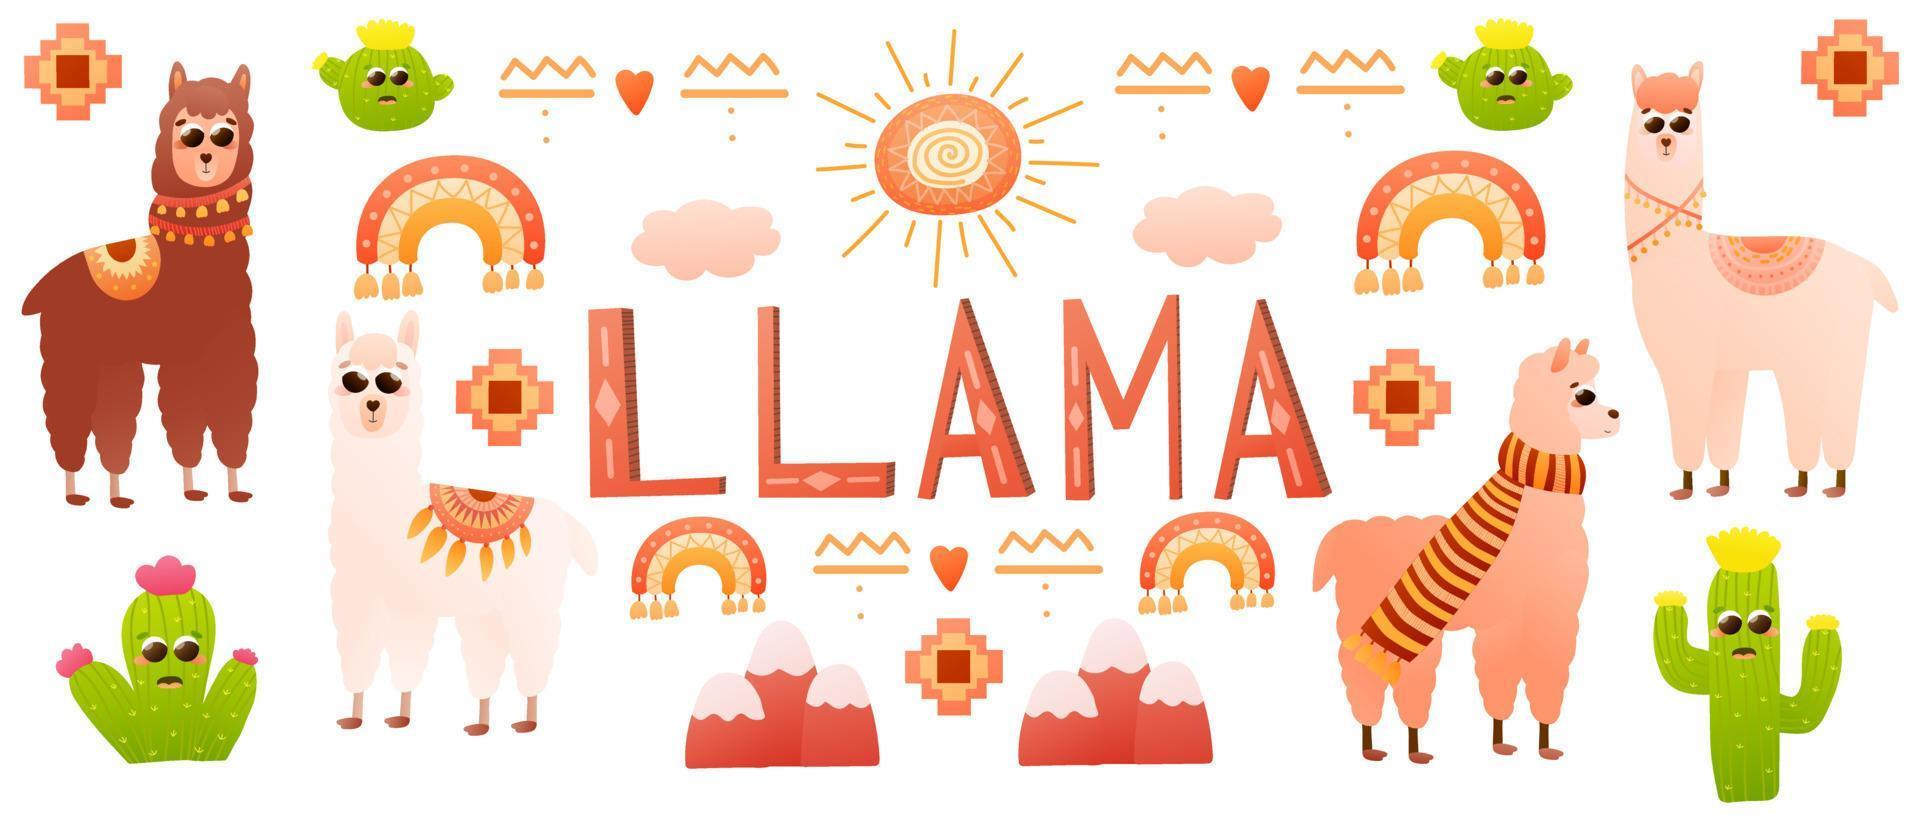 website-banner mit niedlicher alpaka-zeichentrickfigur und stammesvektorelementen mit kawaii-kaktus mit gesichtern, regenbögen und bergen, böhmischer stil für kinder vektor